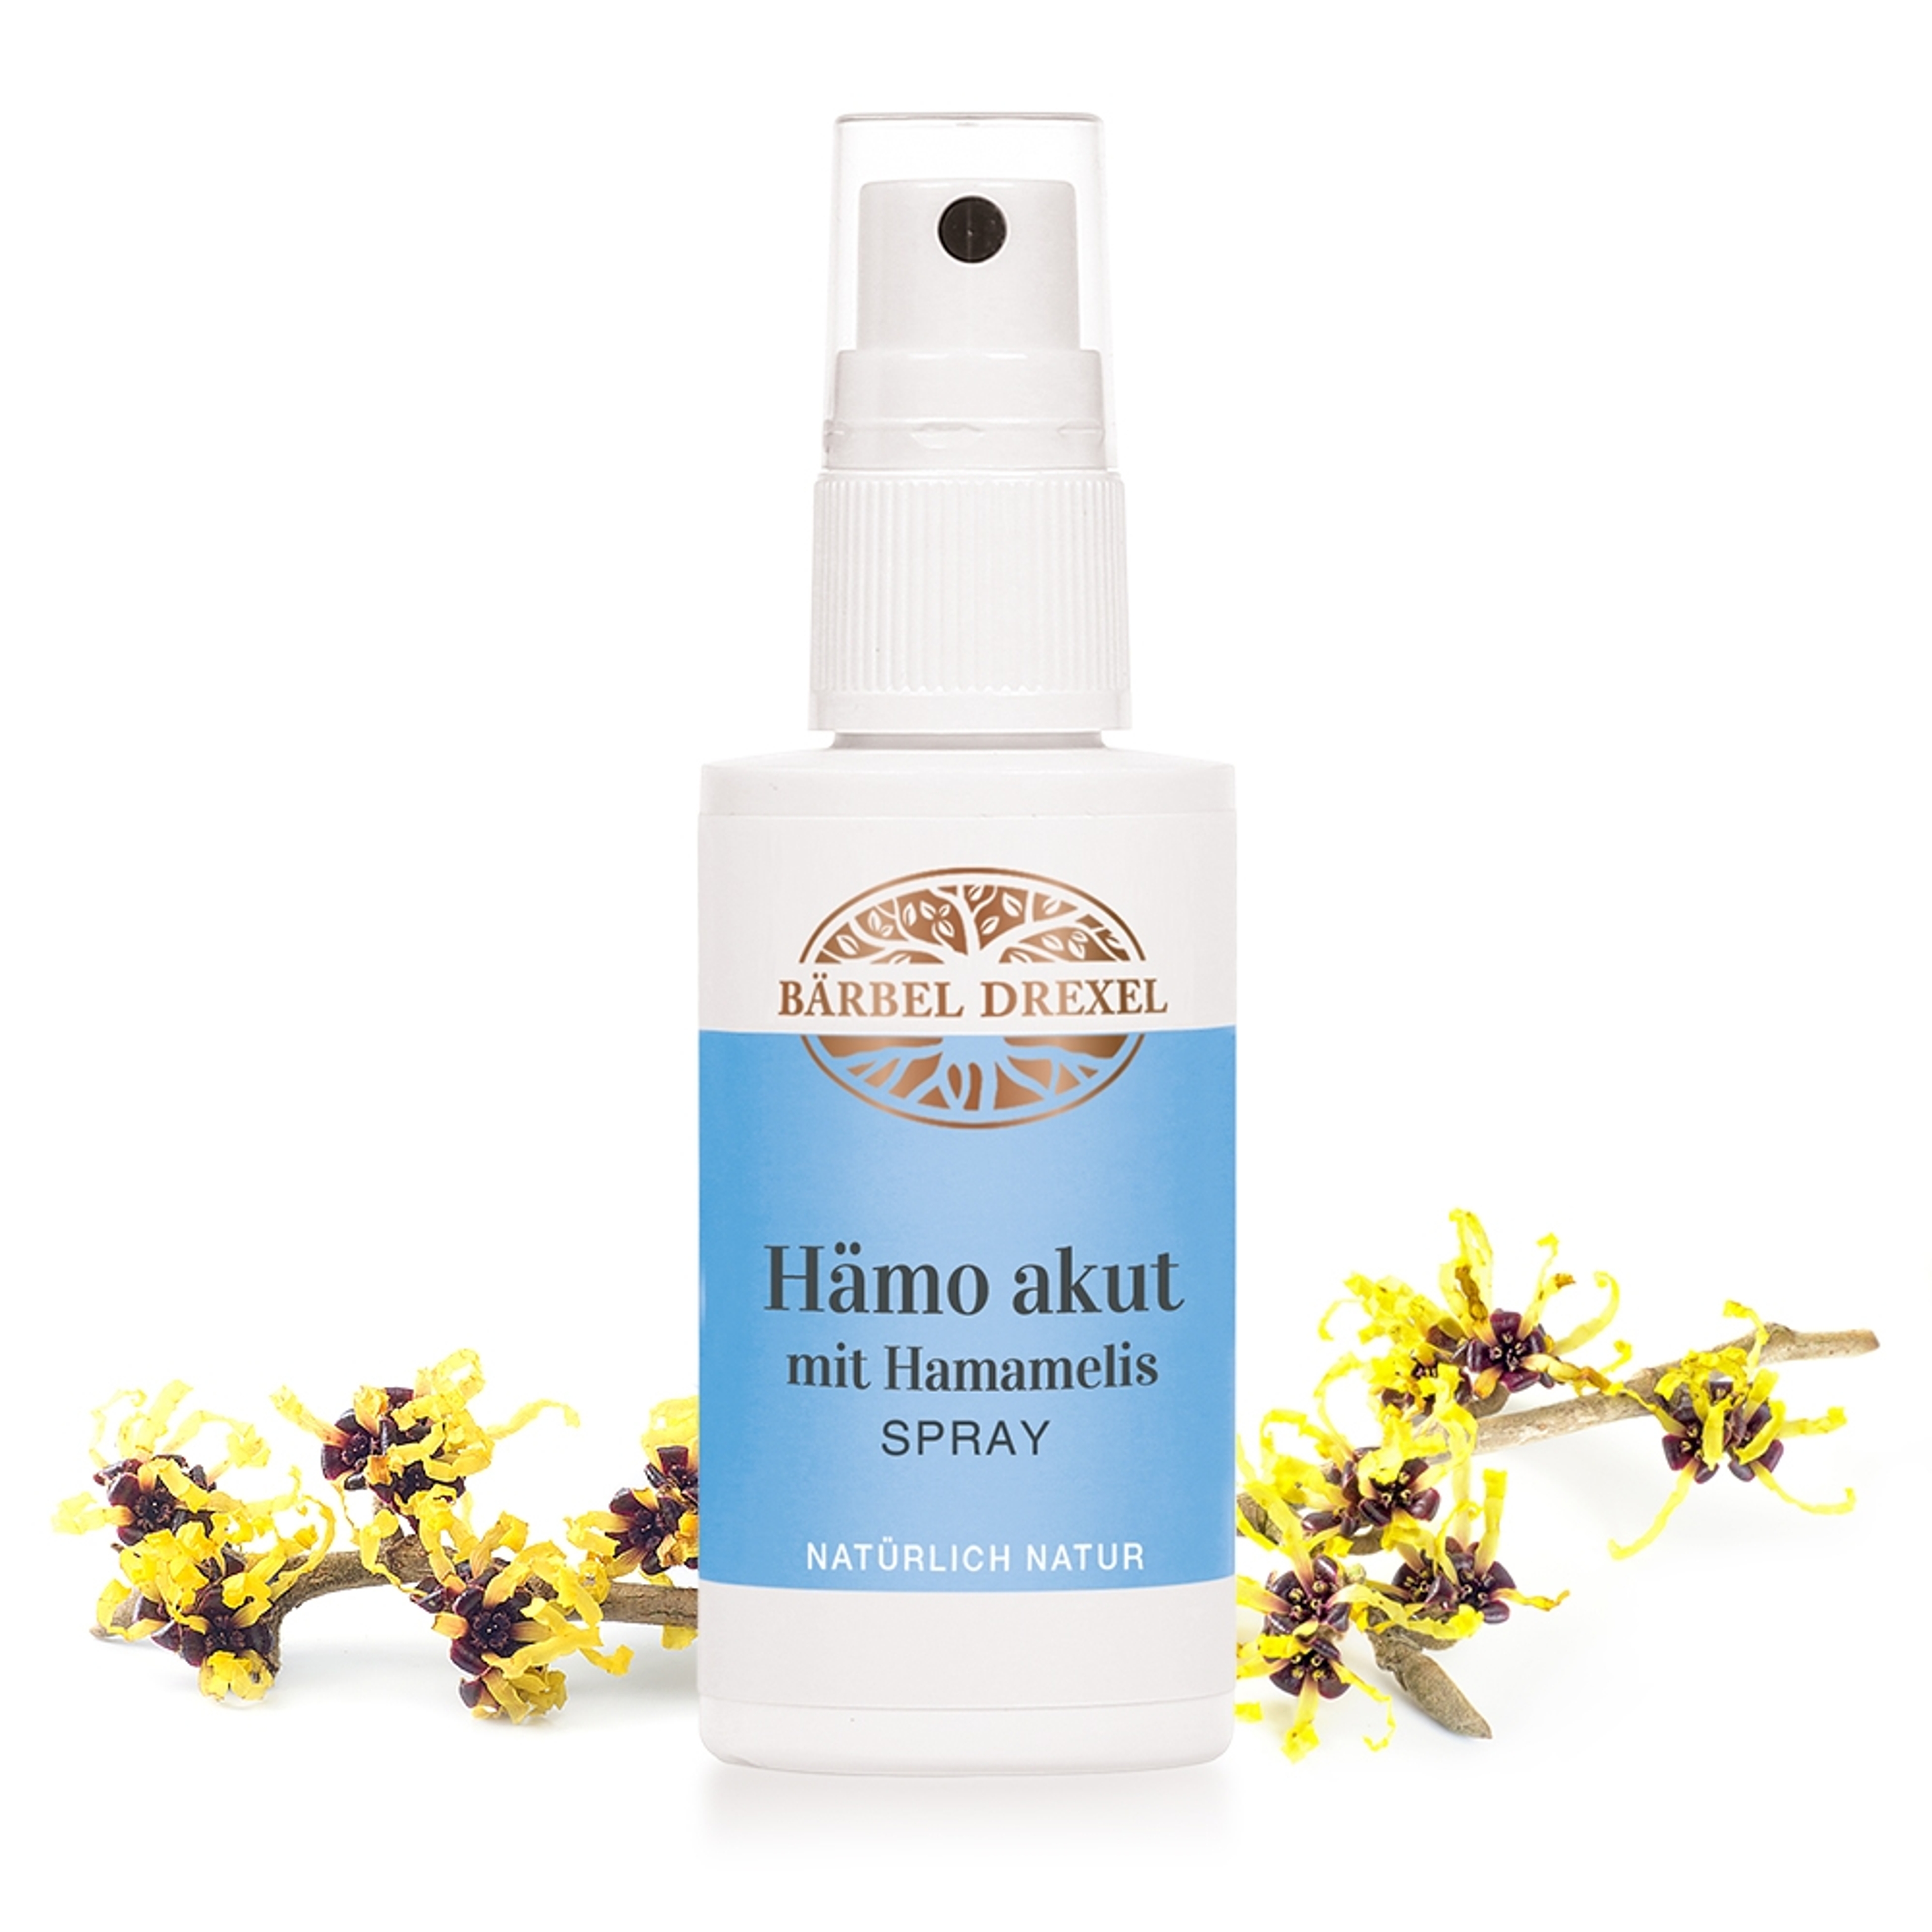 Hämo akut mit Hamamelis Spray, 50ml